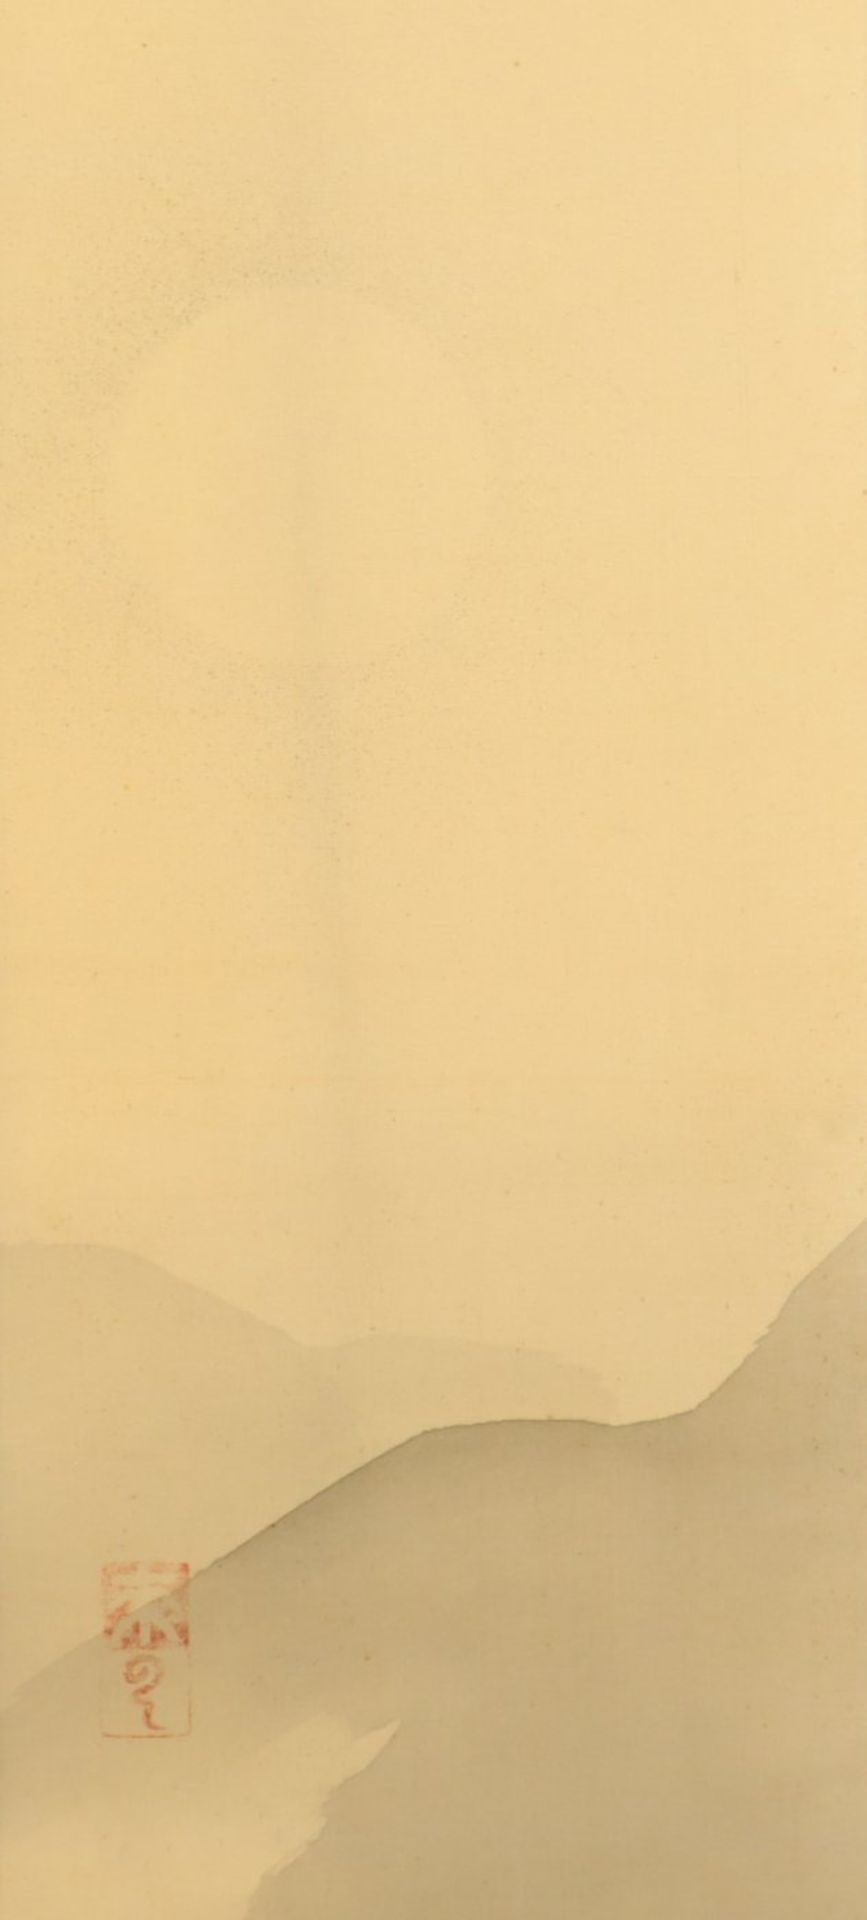 ROLLBILD, Tusche auf Stoff, Landschaft bei Vollmond, Siegel, 36 x 15,5, montiert, JAPAN, 20.Jh. - Bild 2 aus 3